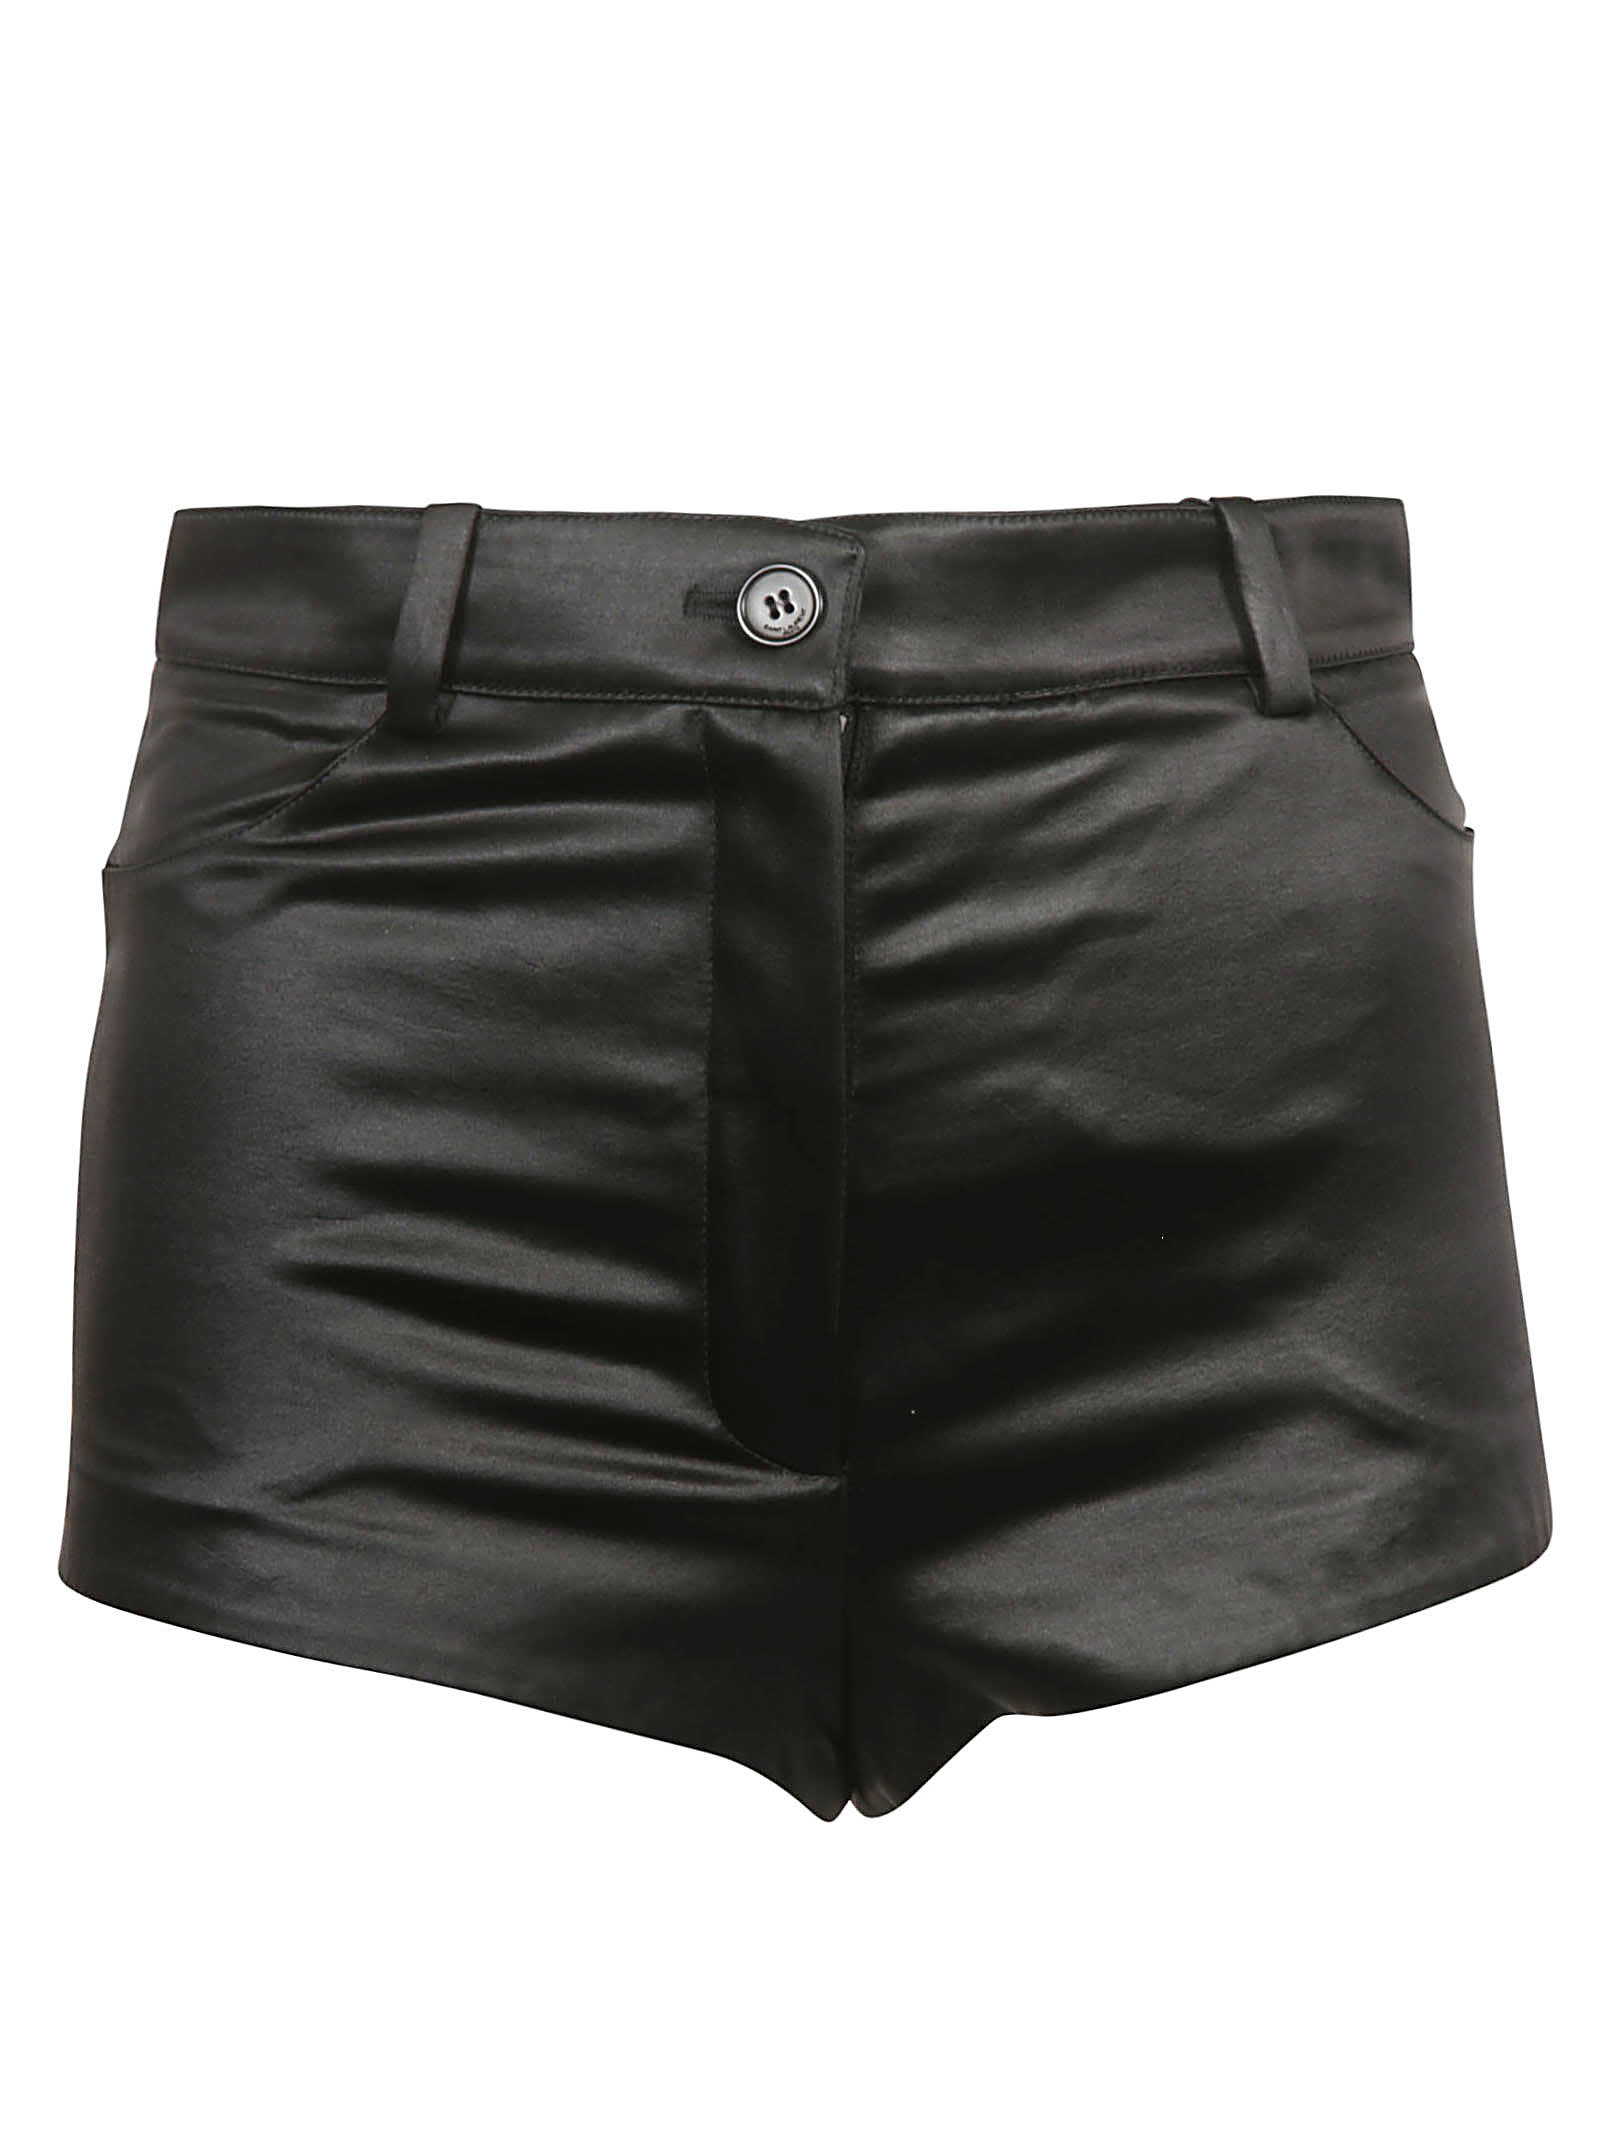 Saint Laurent Classic Buttoned Shorts In 54% Cotton, 48% Acetate